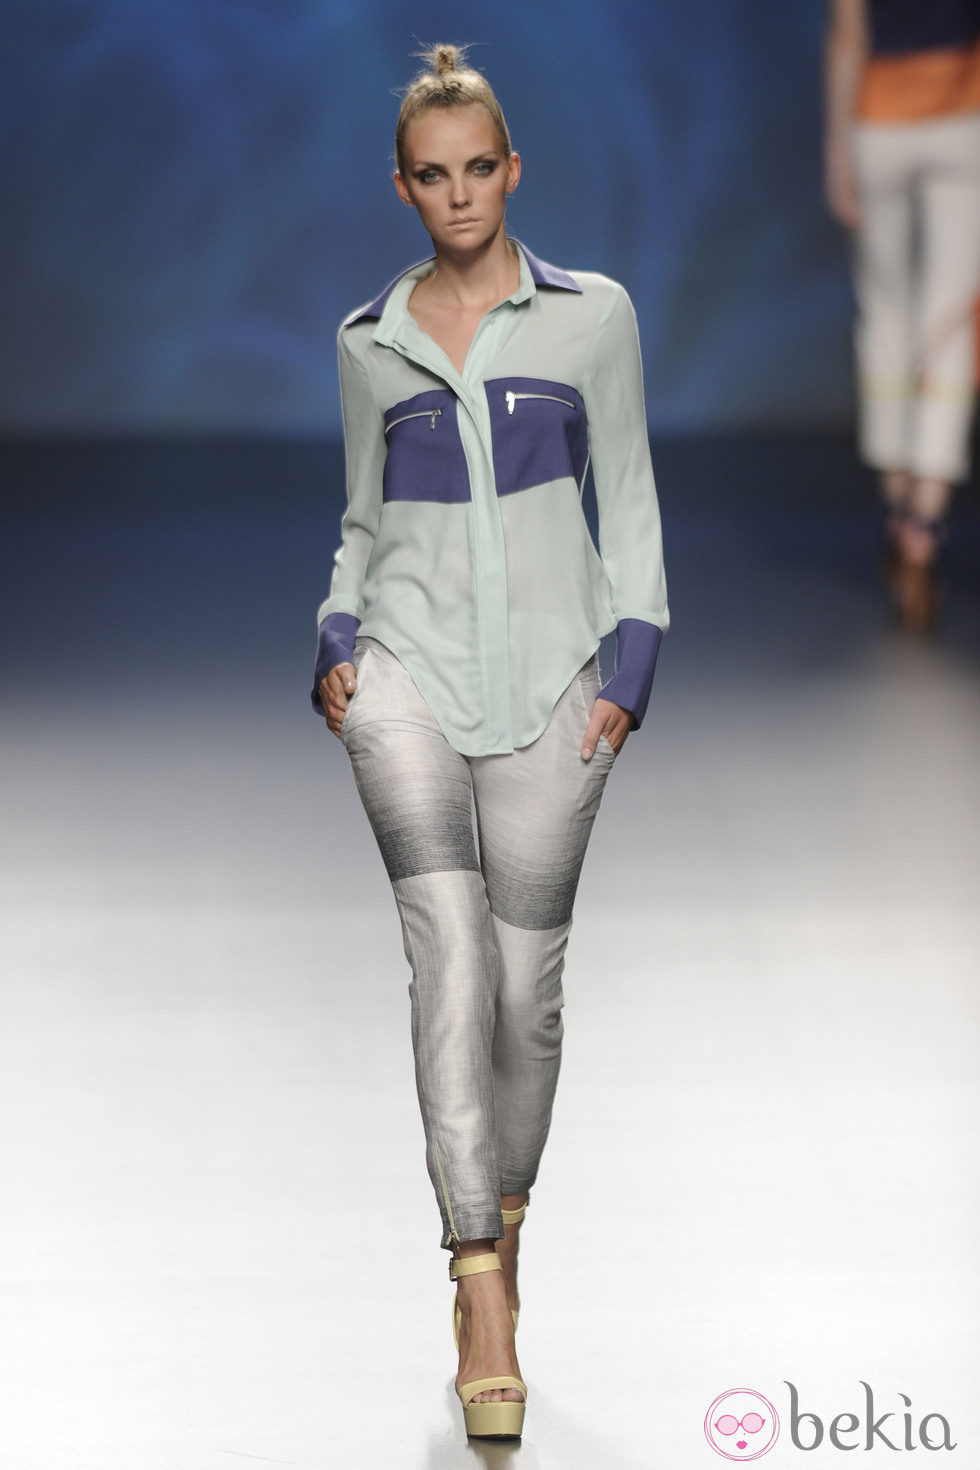 Blusa de manga larga azul turquesa y marino con pantalón gris de la colección primavera/verano 2013 de Sara Coleman